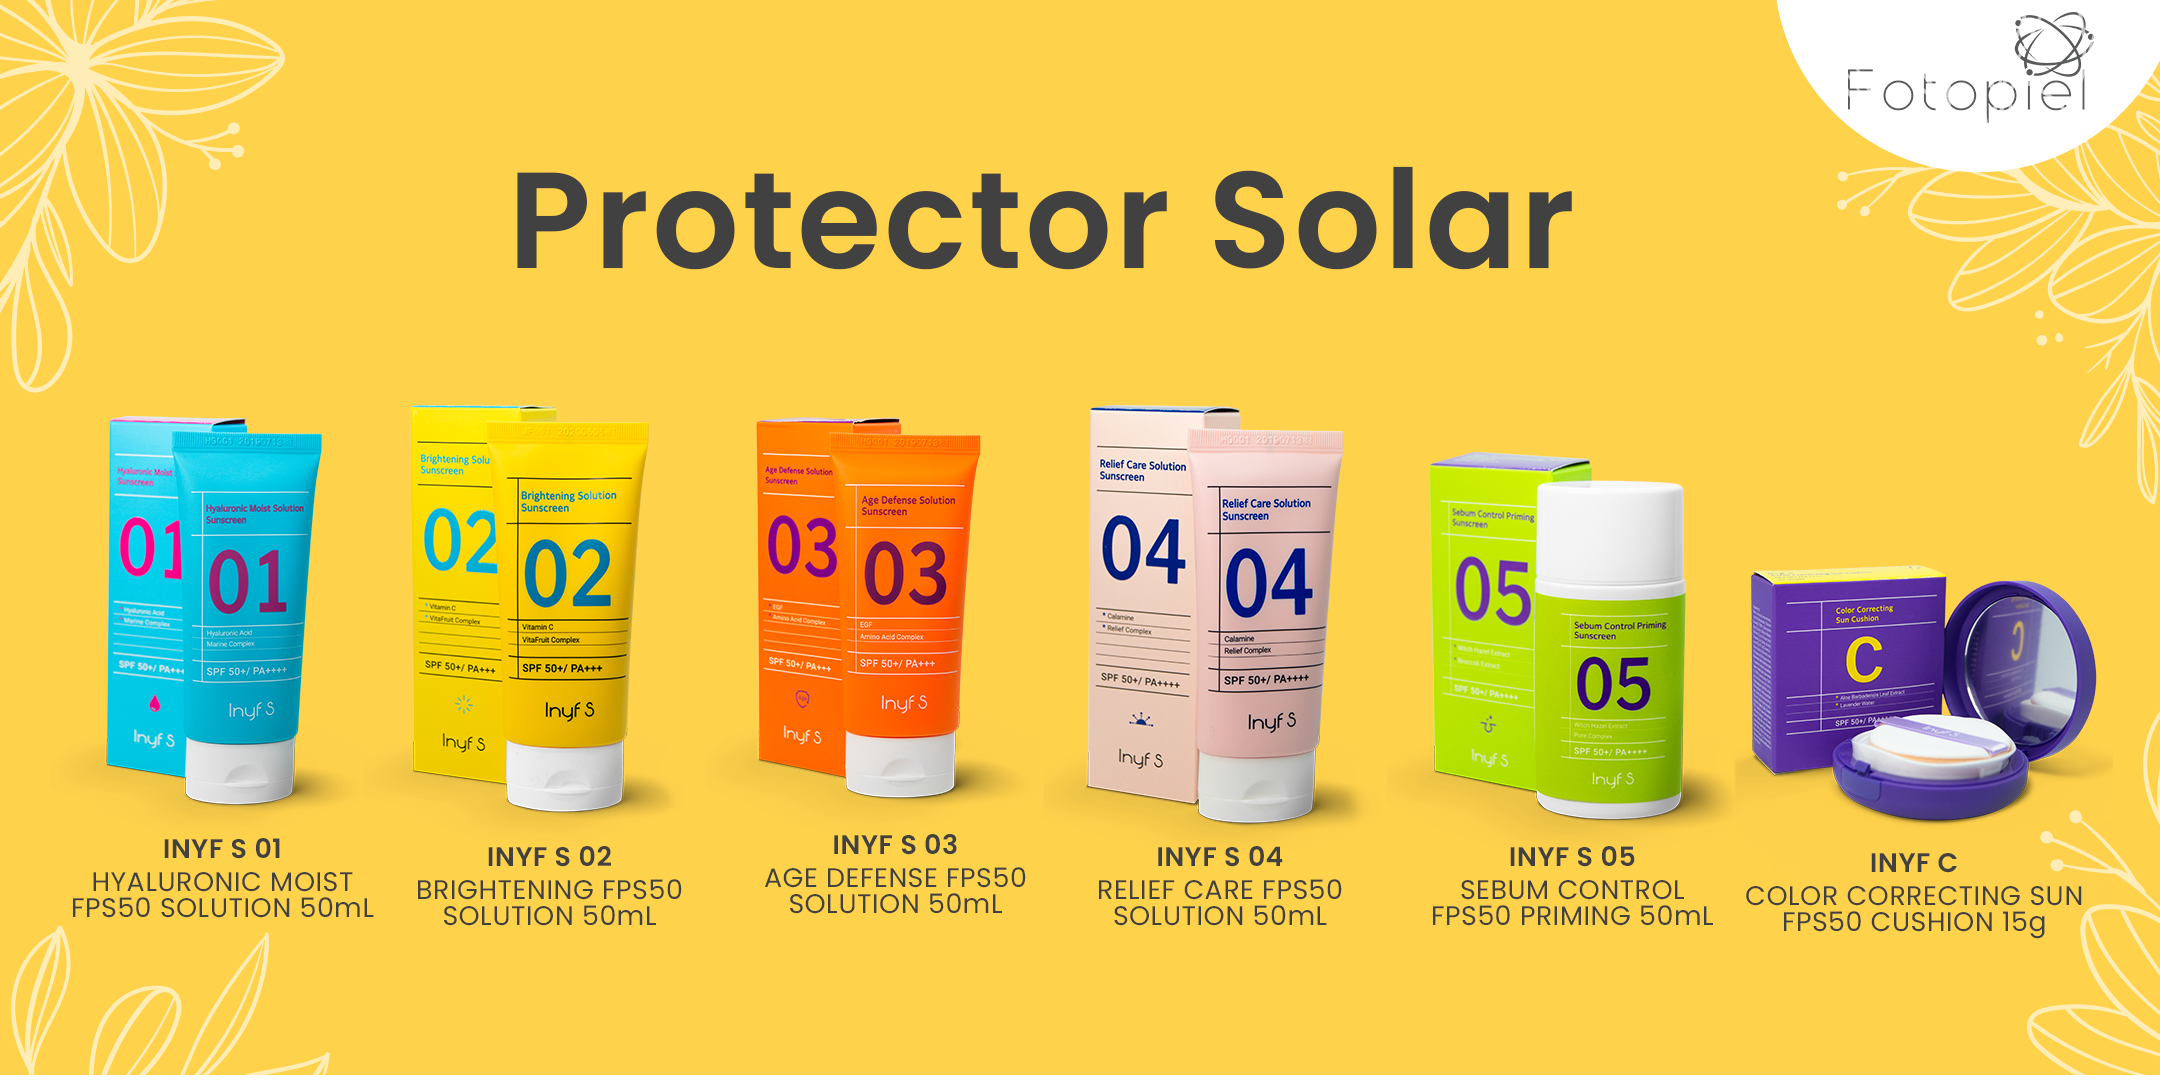 Linea de protectores solares INYF. Amplia variedad de protectores solares. 